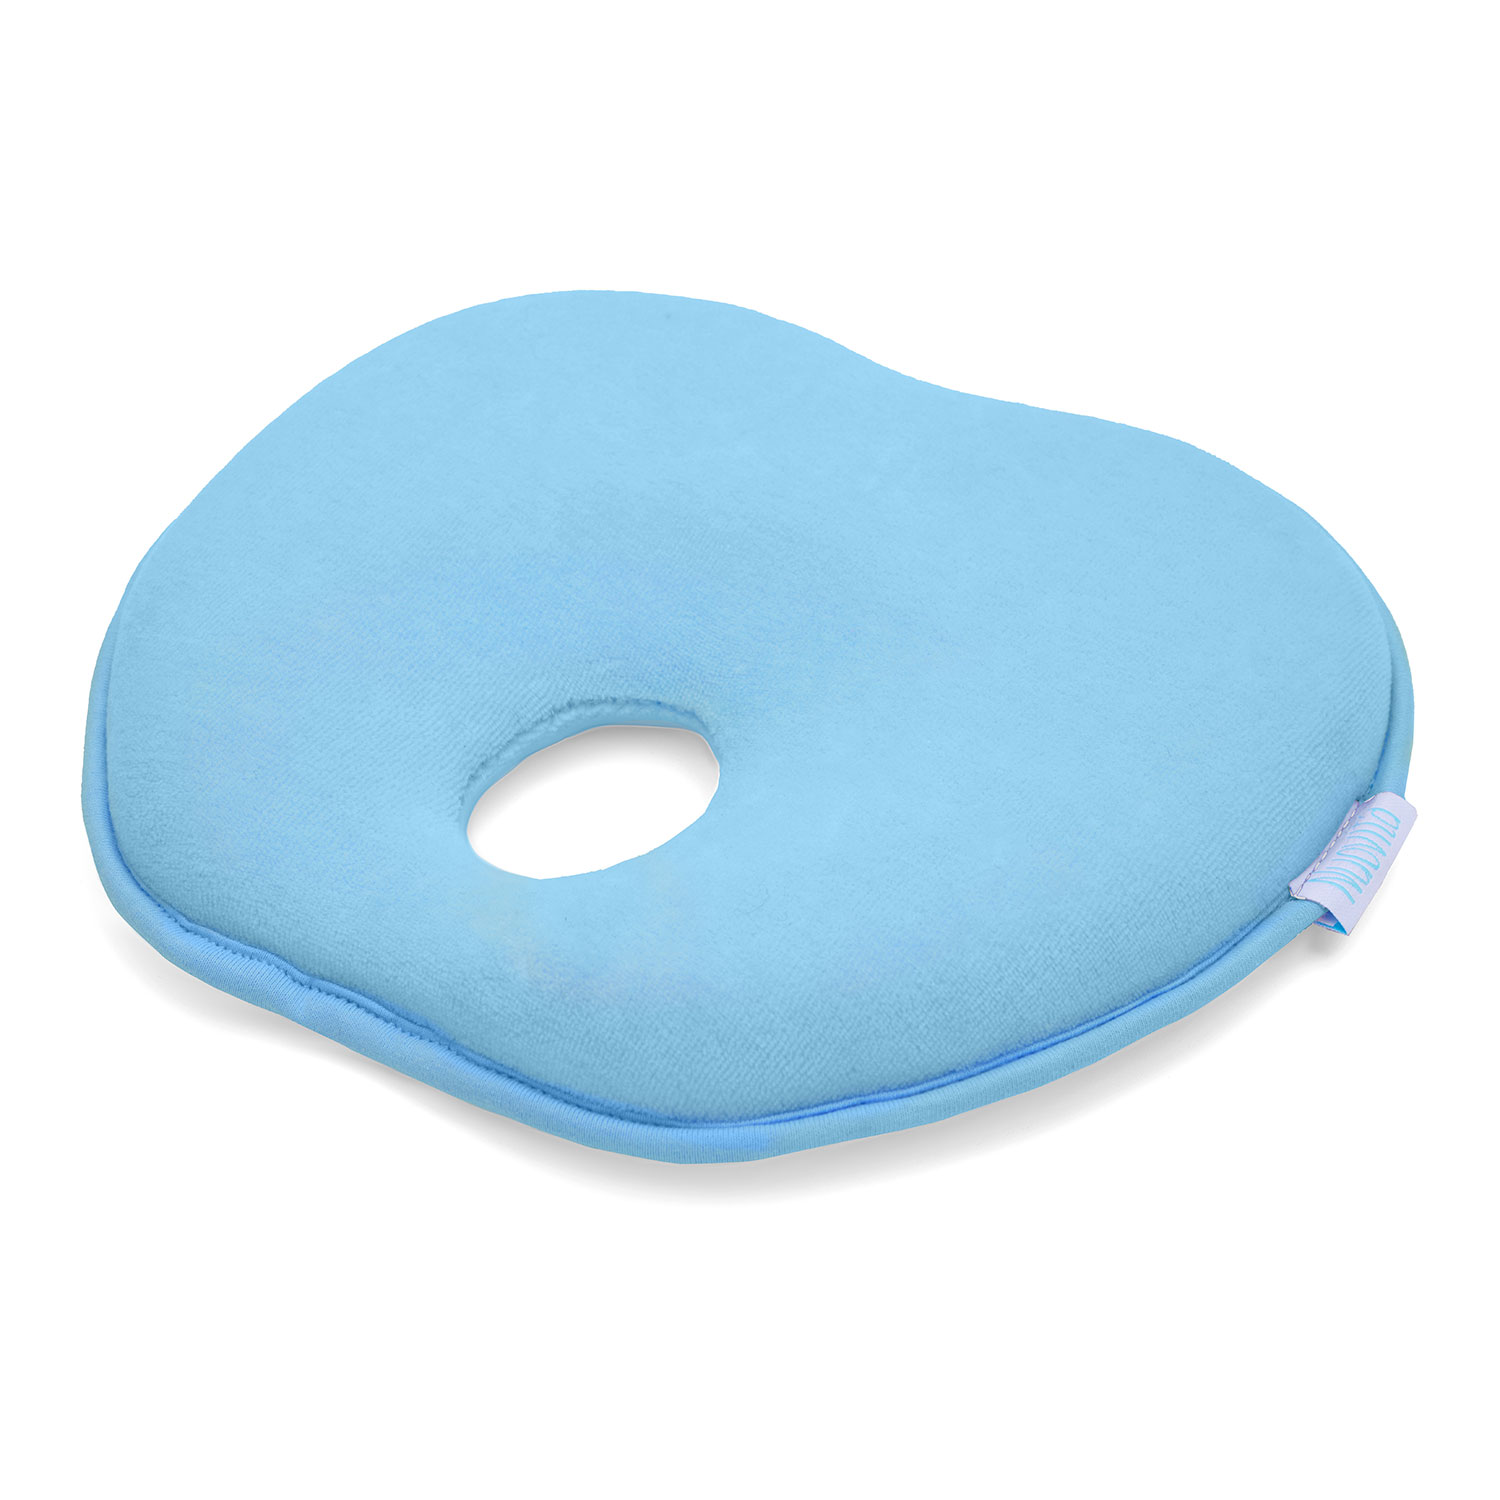 Подушка для новорожденного Nuovita NEONUTTI Mela Memoria Blu/Голубой nuovita подушка для новорожденного neonutti mela memoria 24х22 см